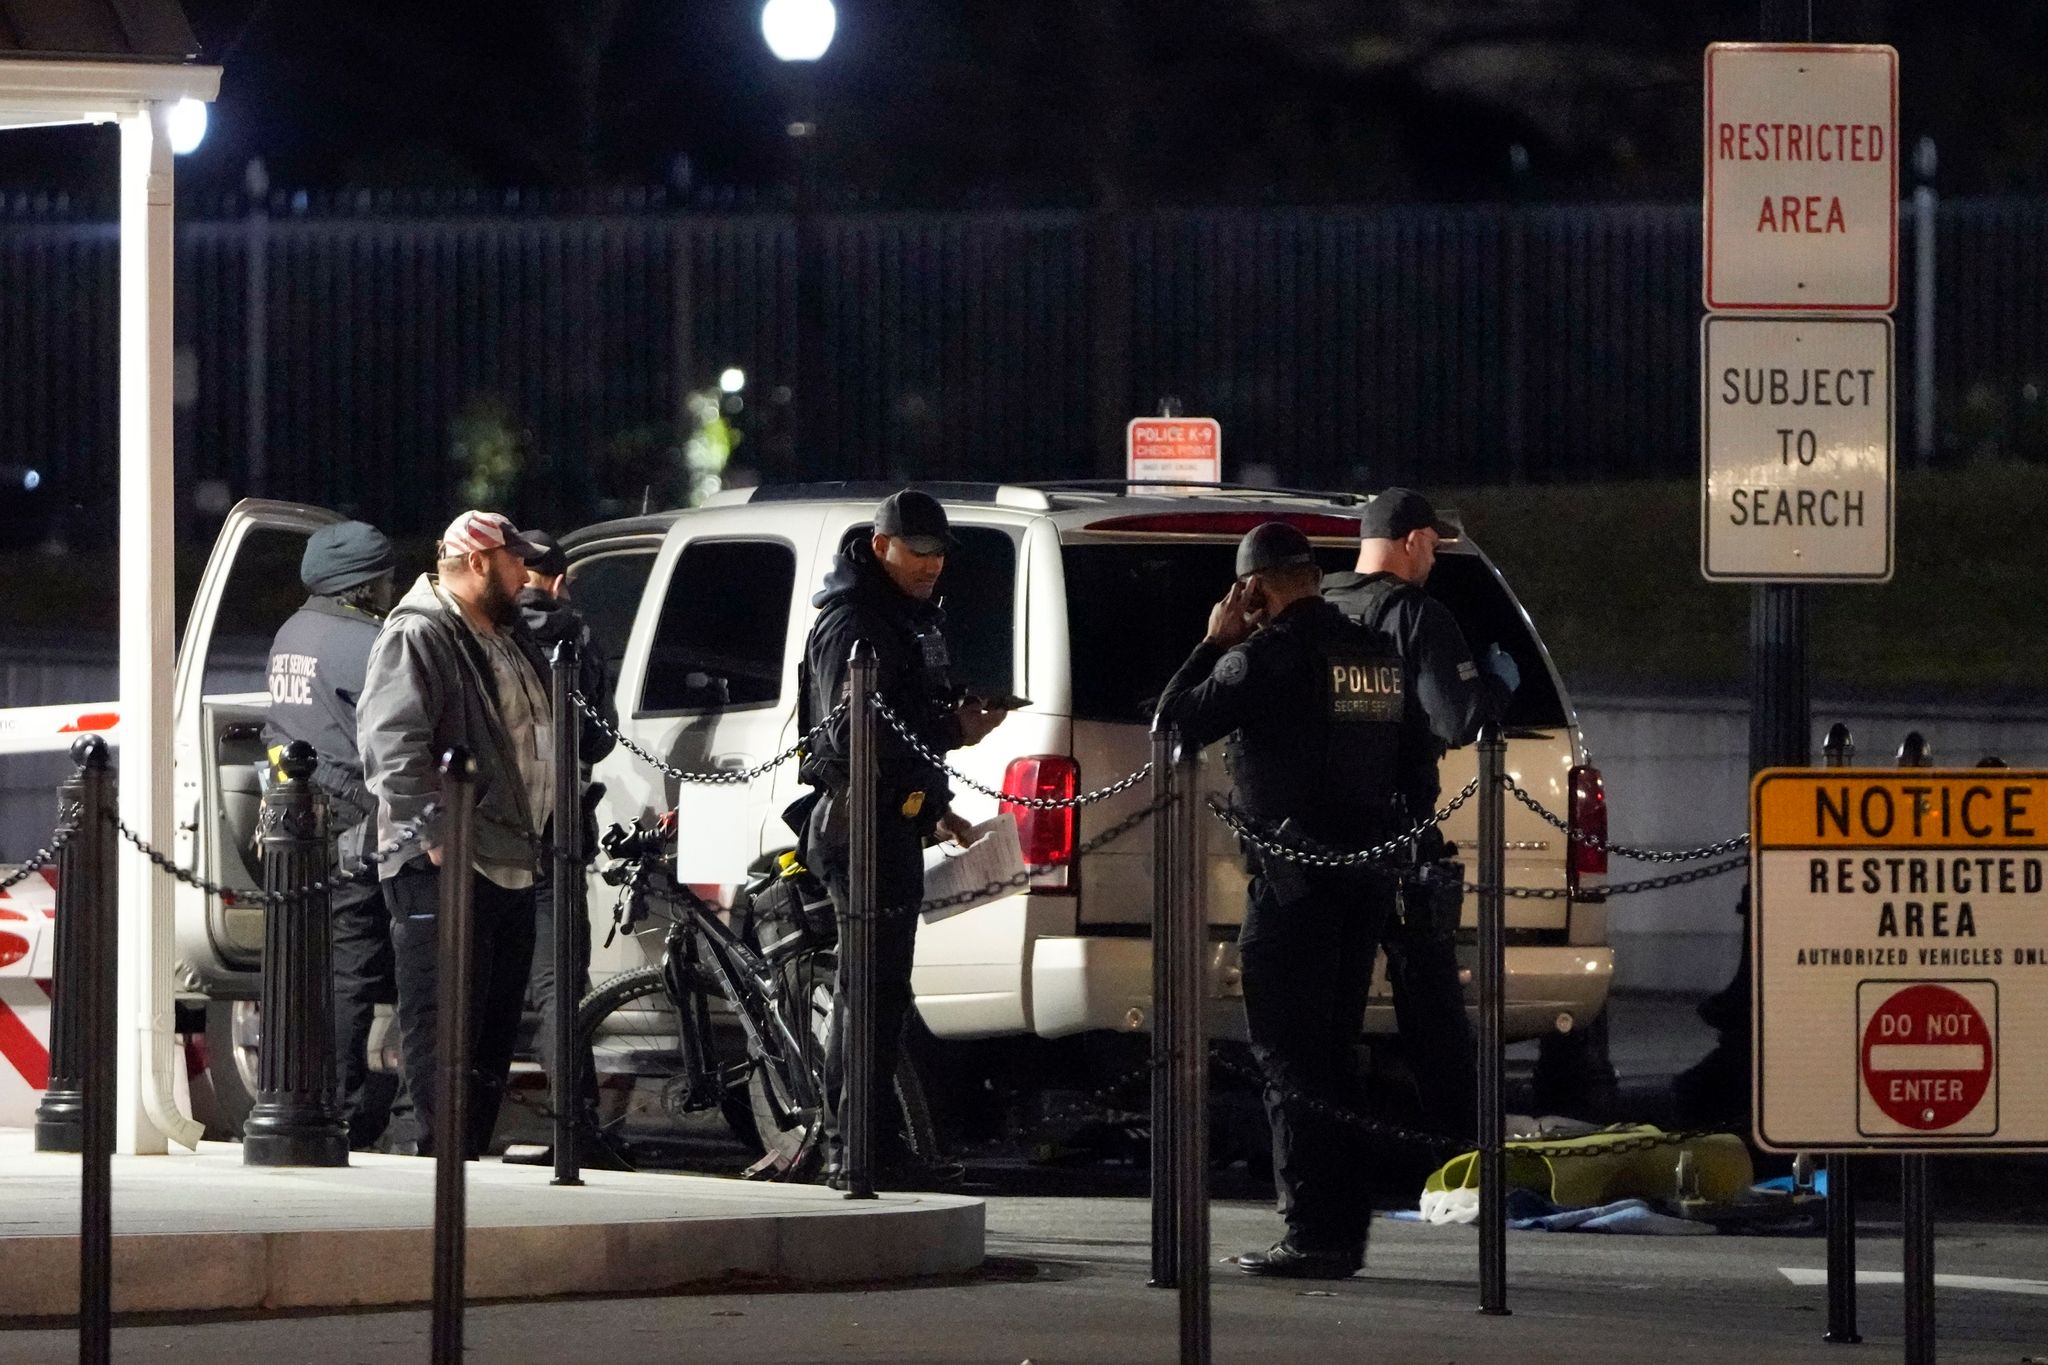 Die Polizei des Secret Service untersucht das Fahrzeug, das gegen eine Sicherheitsschranke am Eingang des Weißen Hauses gefahren ist.